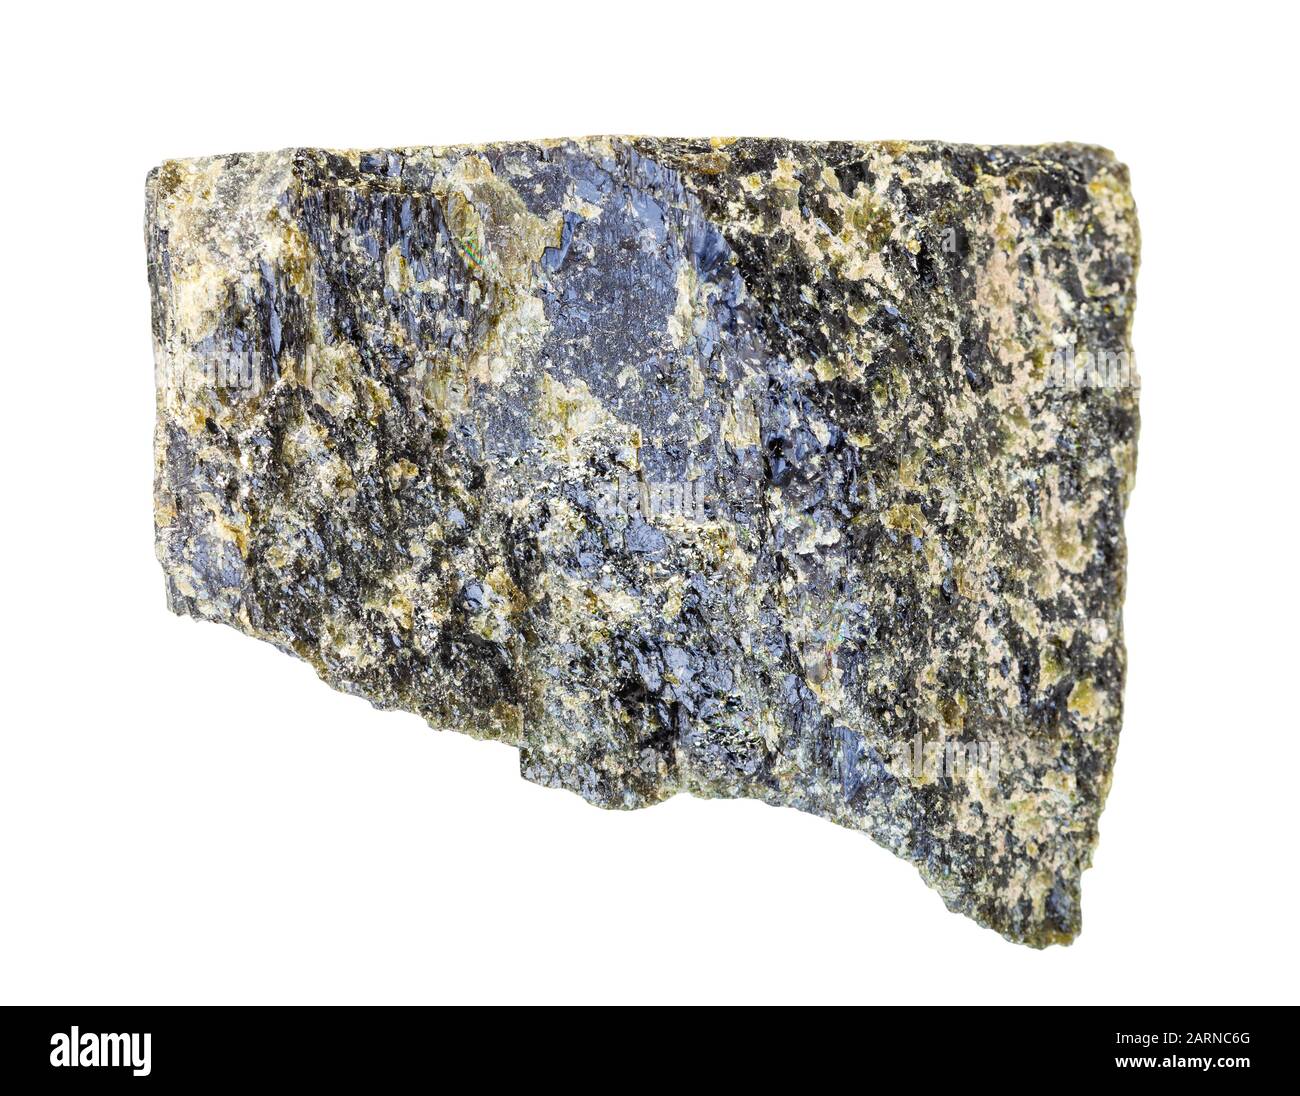 Nahaufnahme der natürlichen Mineralprobe aus der geologischen Sammlung - unpoliertes Epidote-Gestein isoliert auf weißem Grund Stockfoto